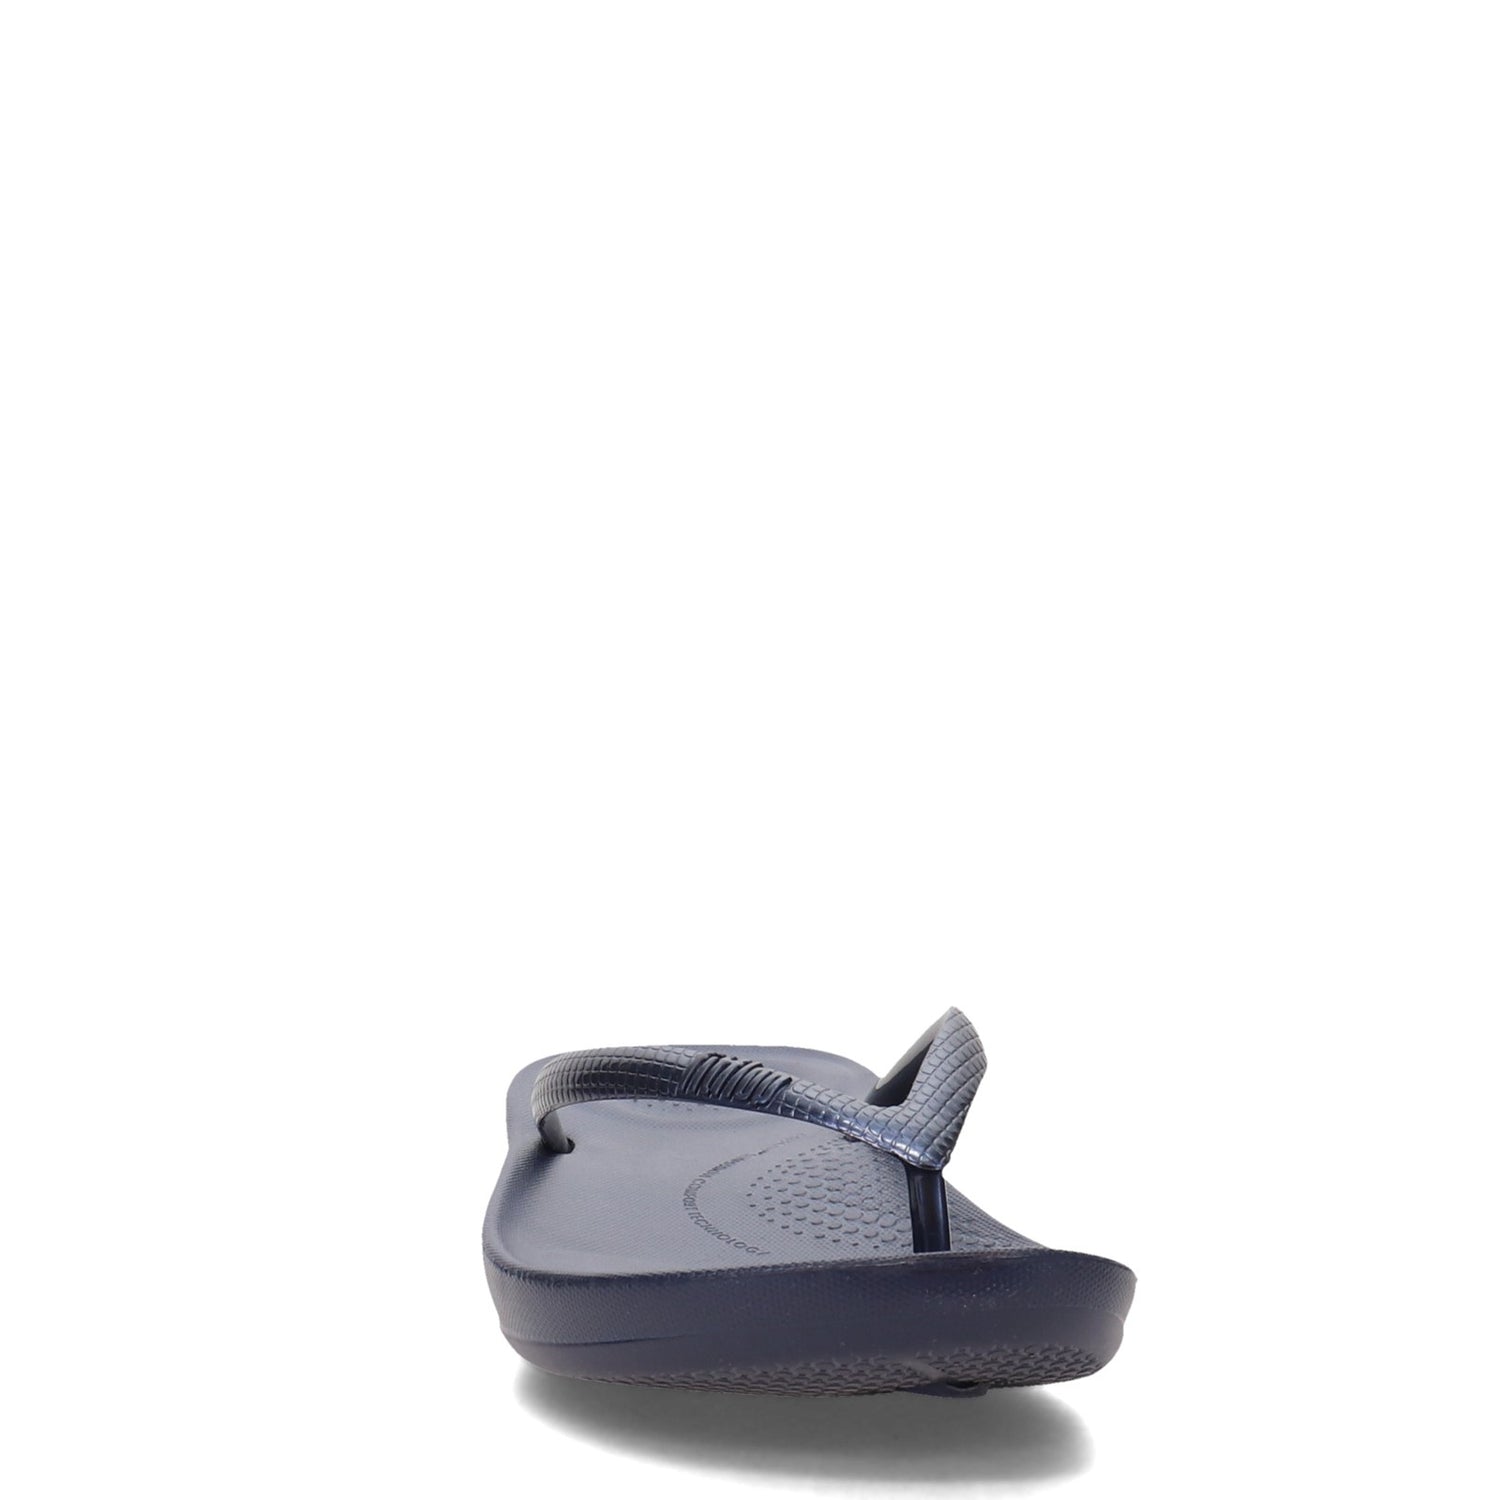 Peltz Shoes  Women's FitFlop iQushion Flip-Flop Navy E54-399